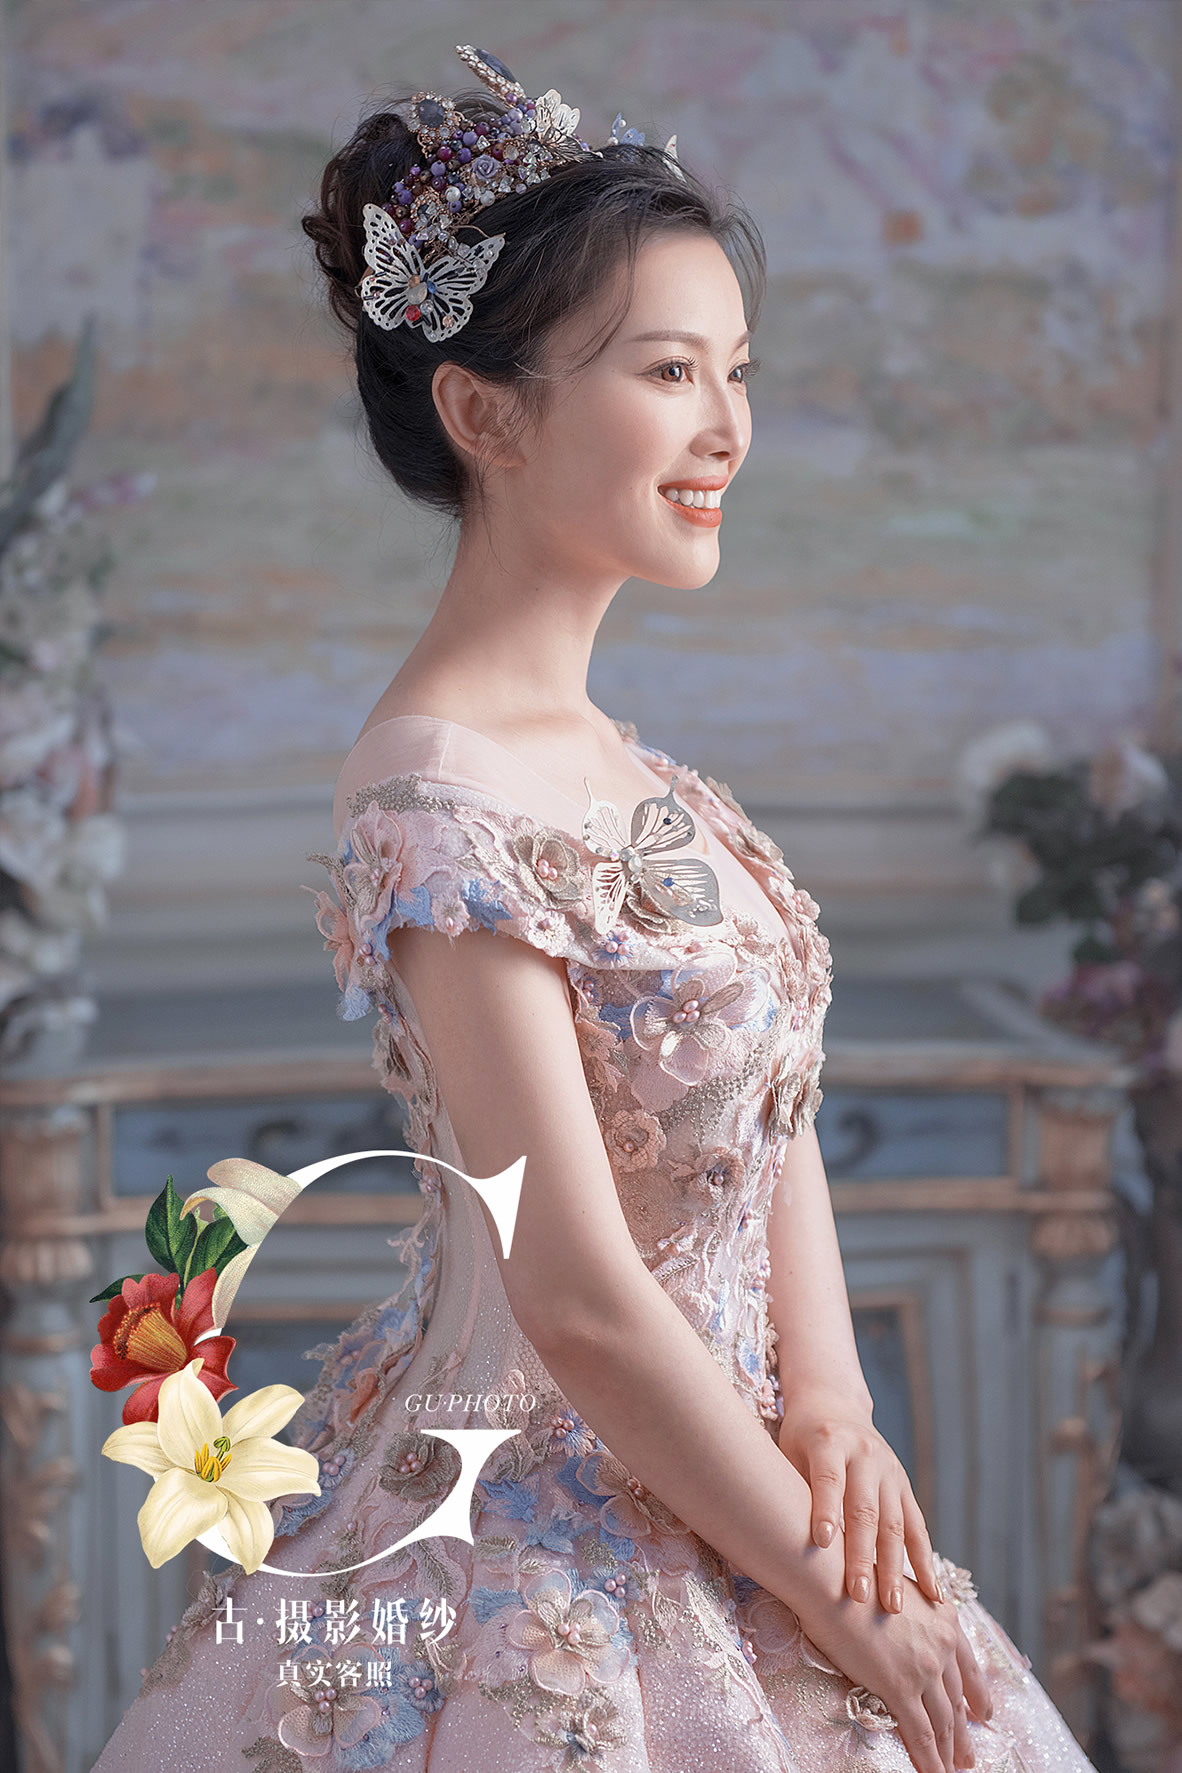 薛先生 杨小姐 - 每日客照 - 古摄影婚纱艺术-古摄影成都婚纱摄影艺术摄影网